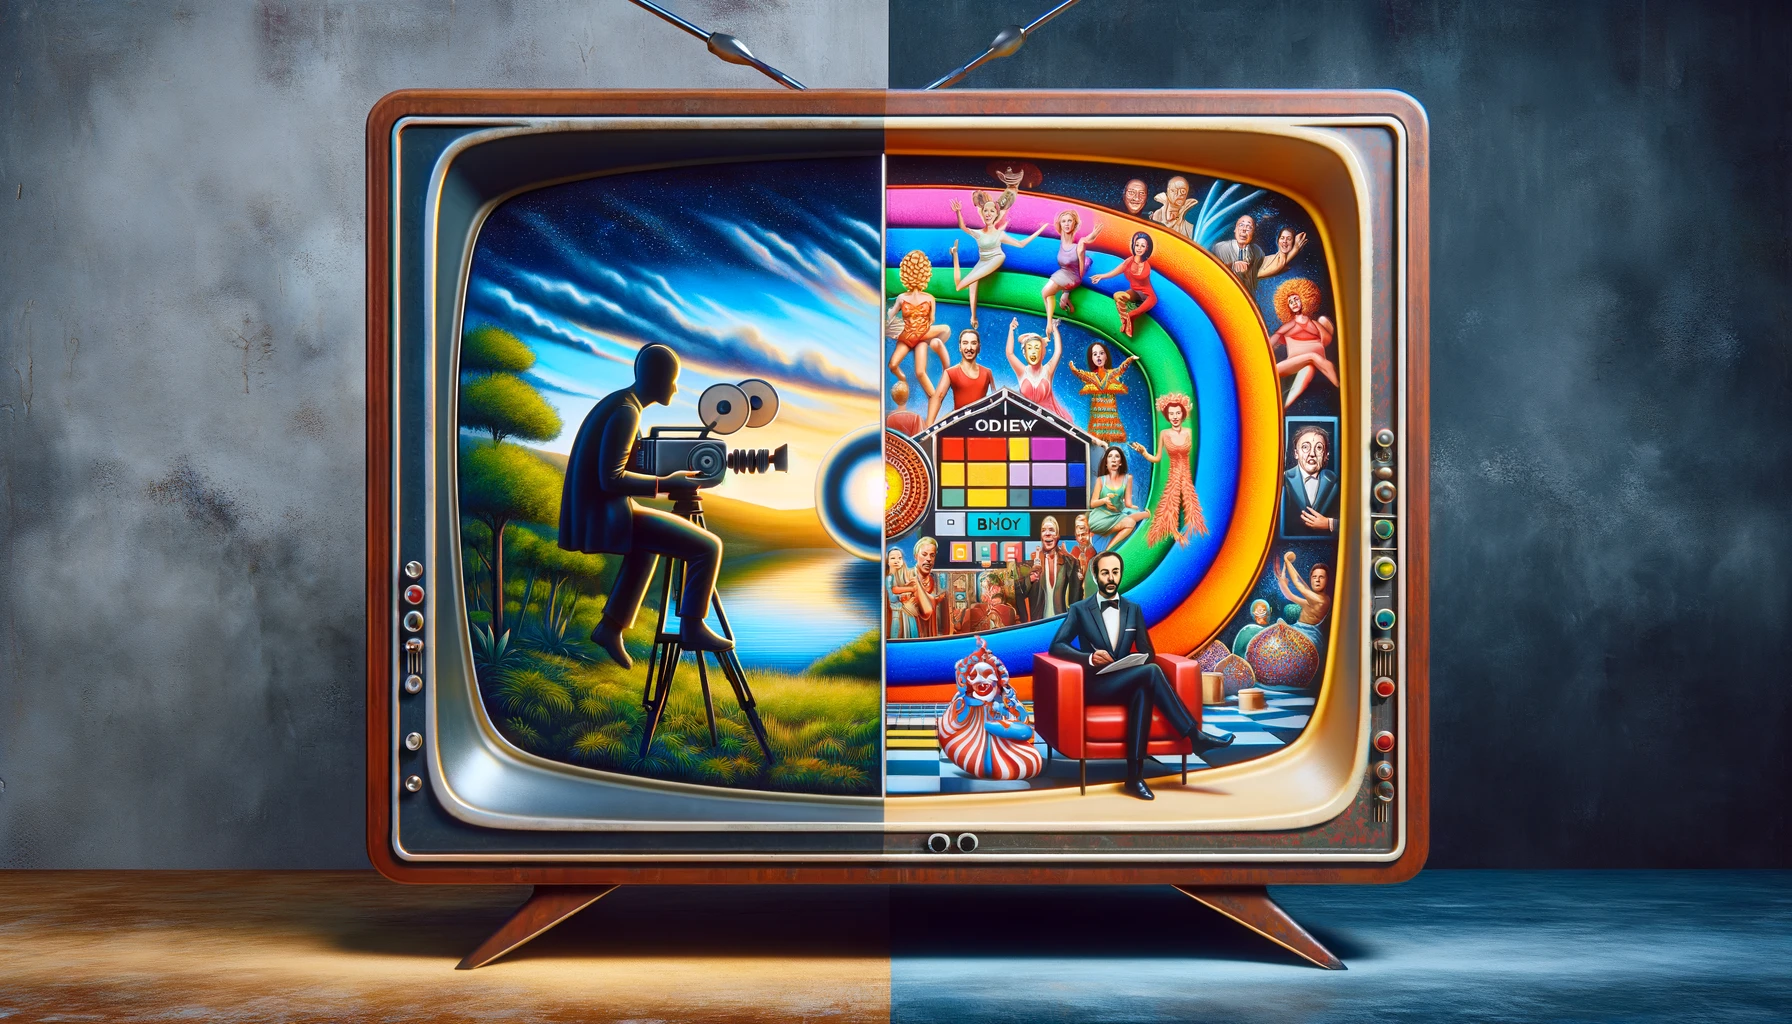 De populariteit van kunst- en kitschprogramma's op televisie.